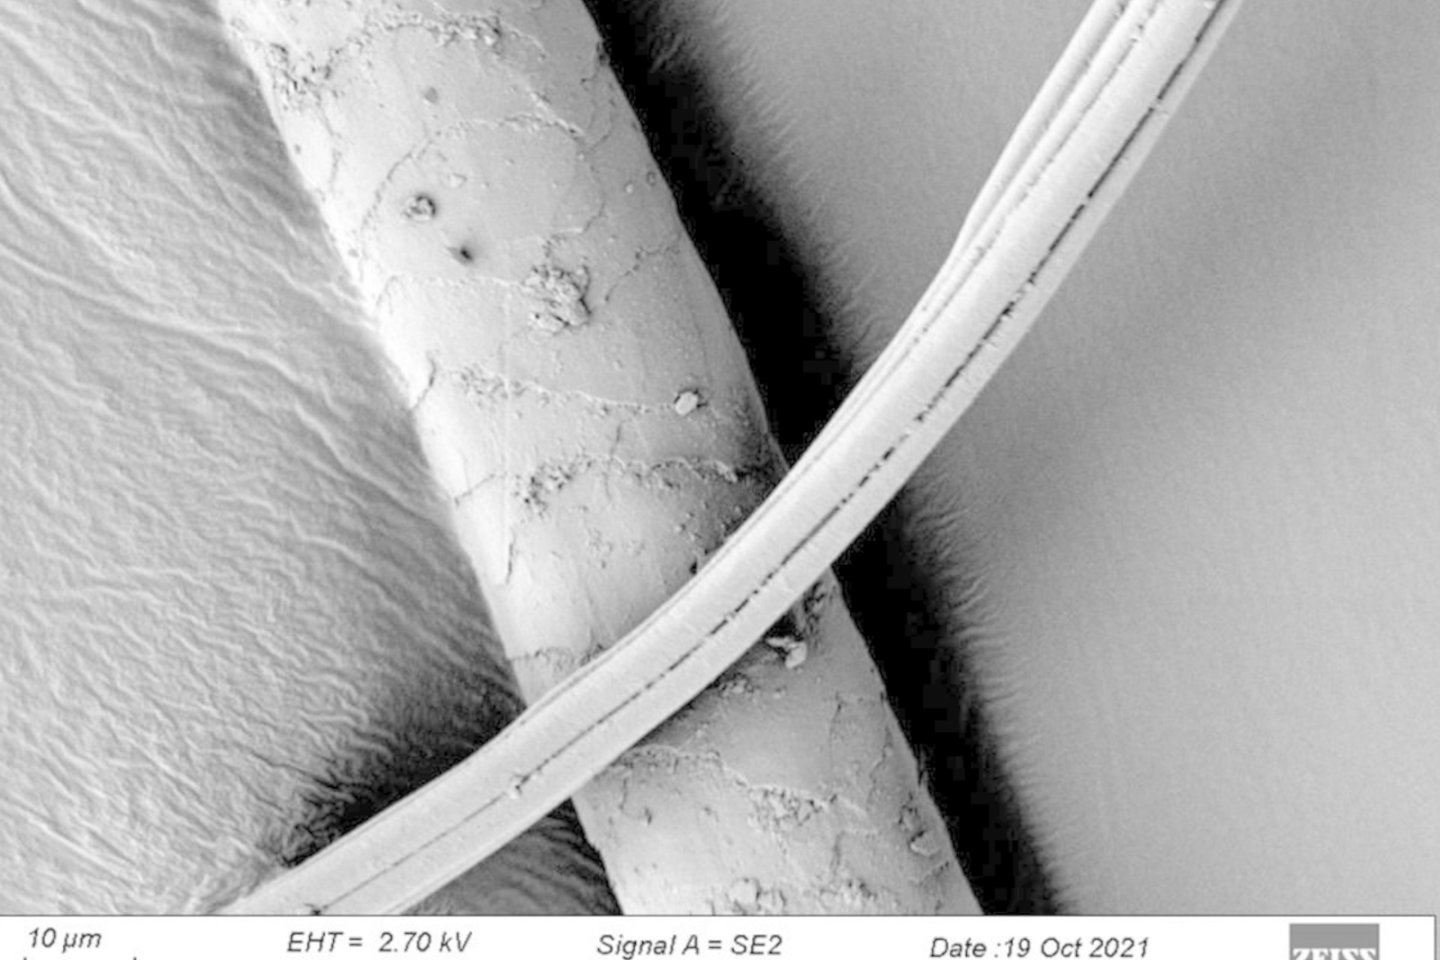  Šioje nuotraukoje matomas šuninio gyvūno plaukas, stebimas elektroniniu mikroskopu.<br> T. Kirkinen nuotr.